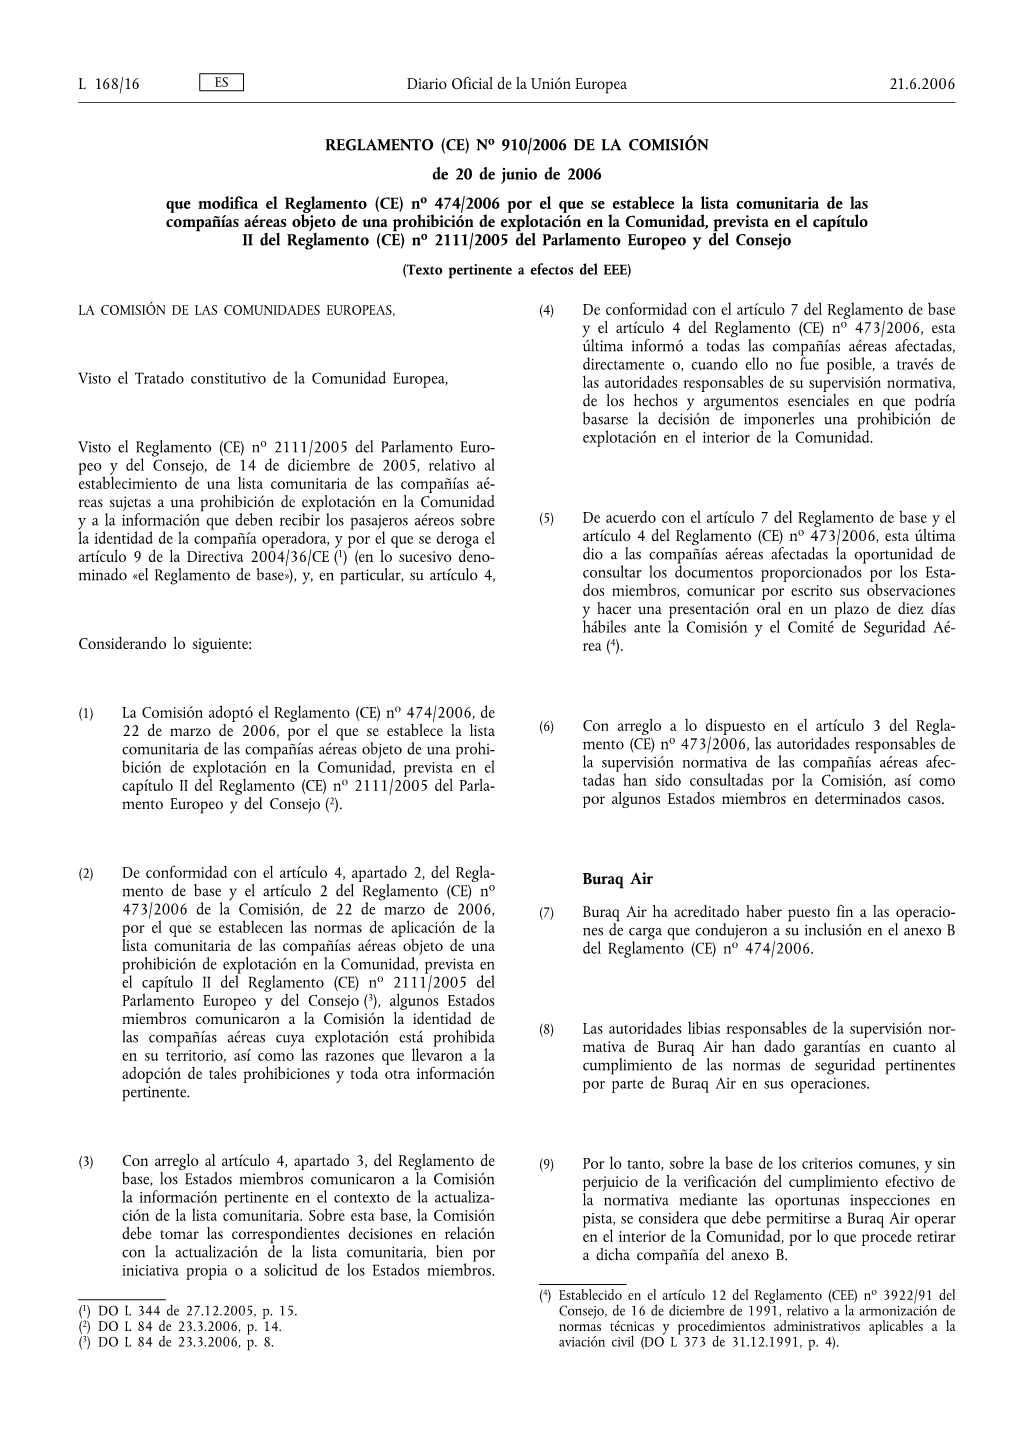 REGLAMENTO (CE) No 910/2006 DE LA COMISIÓN De 20 De Junio De